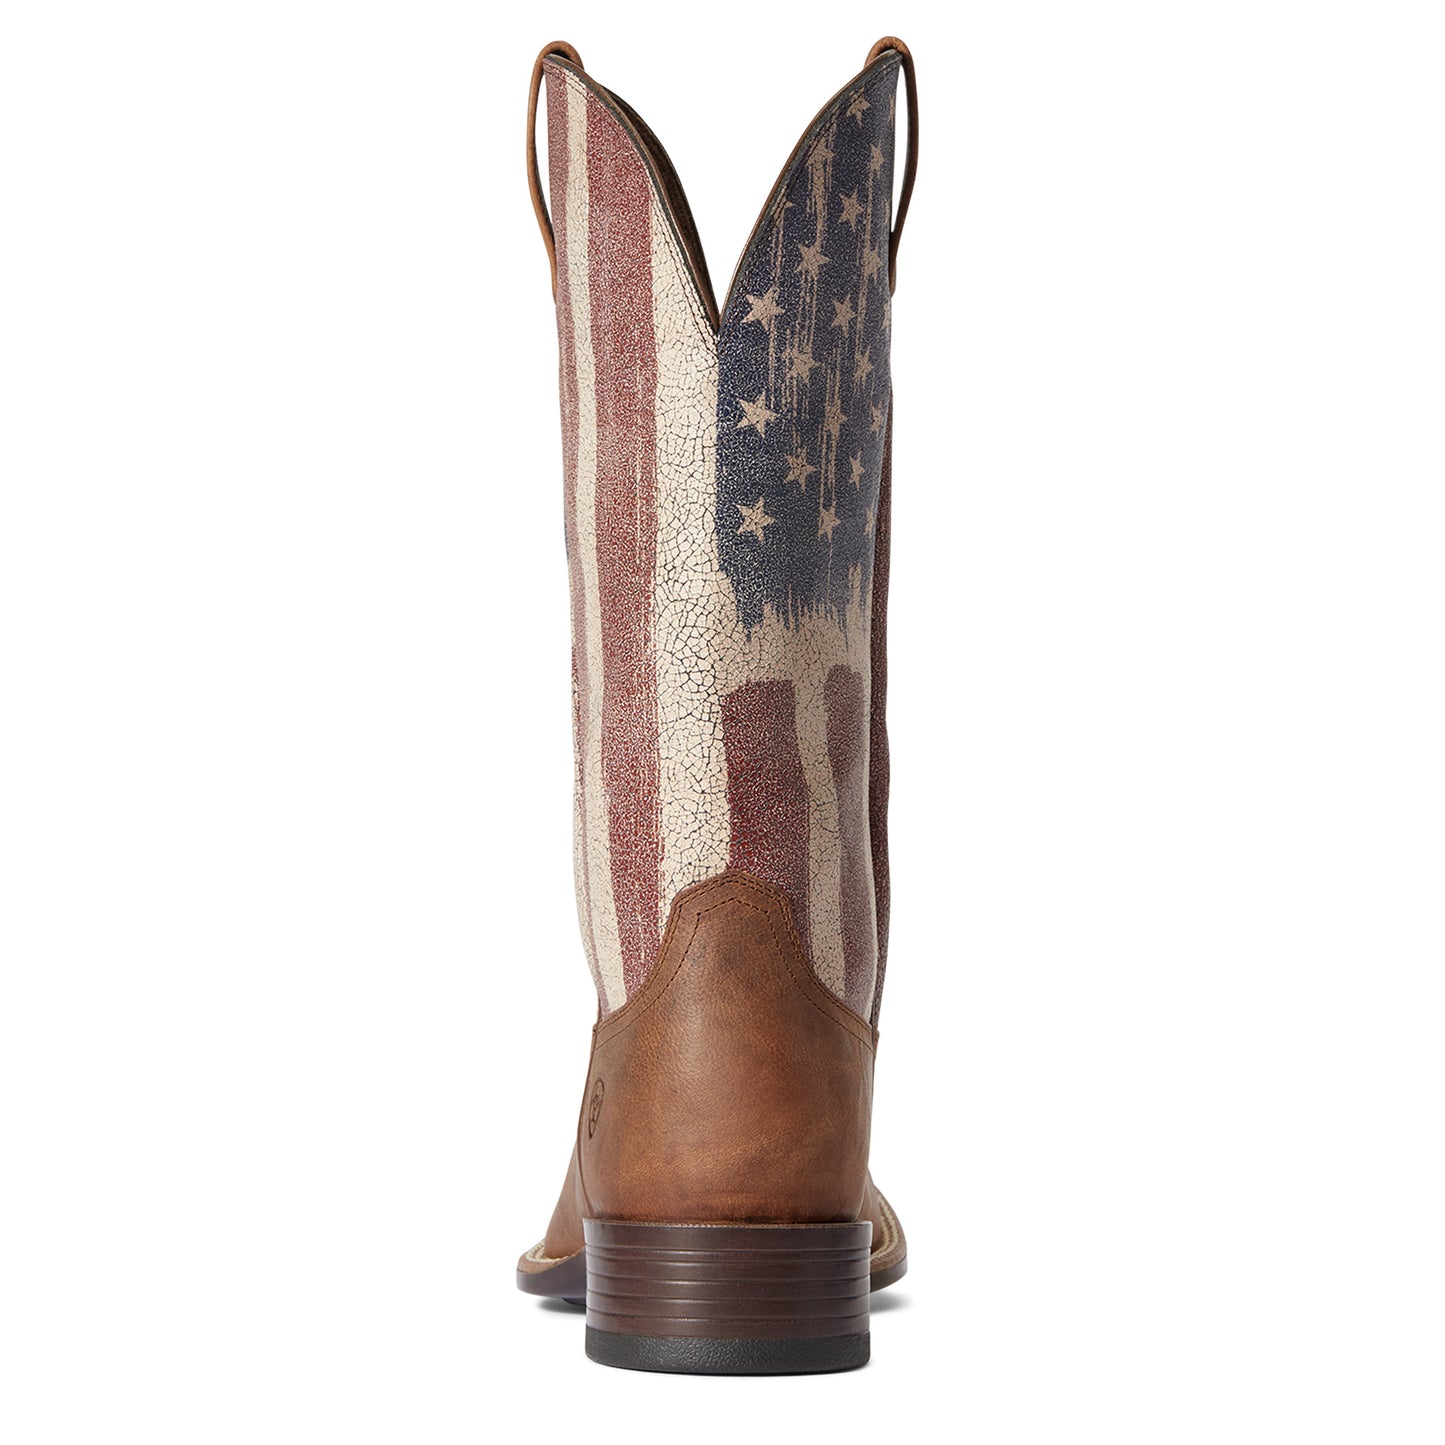 Ariat Men's Patriot Ultra Sorrel Crunch & American Flag Boots 10038396